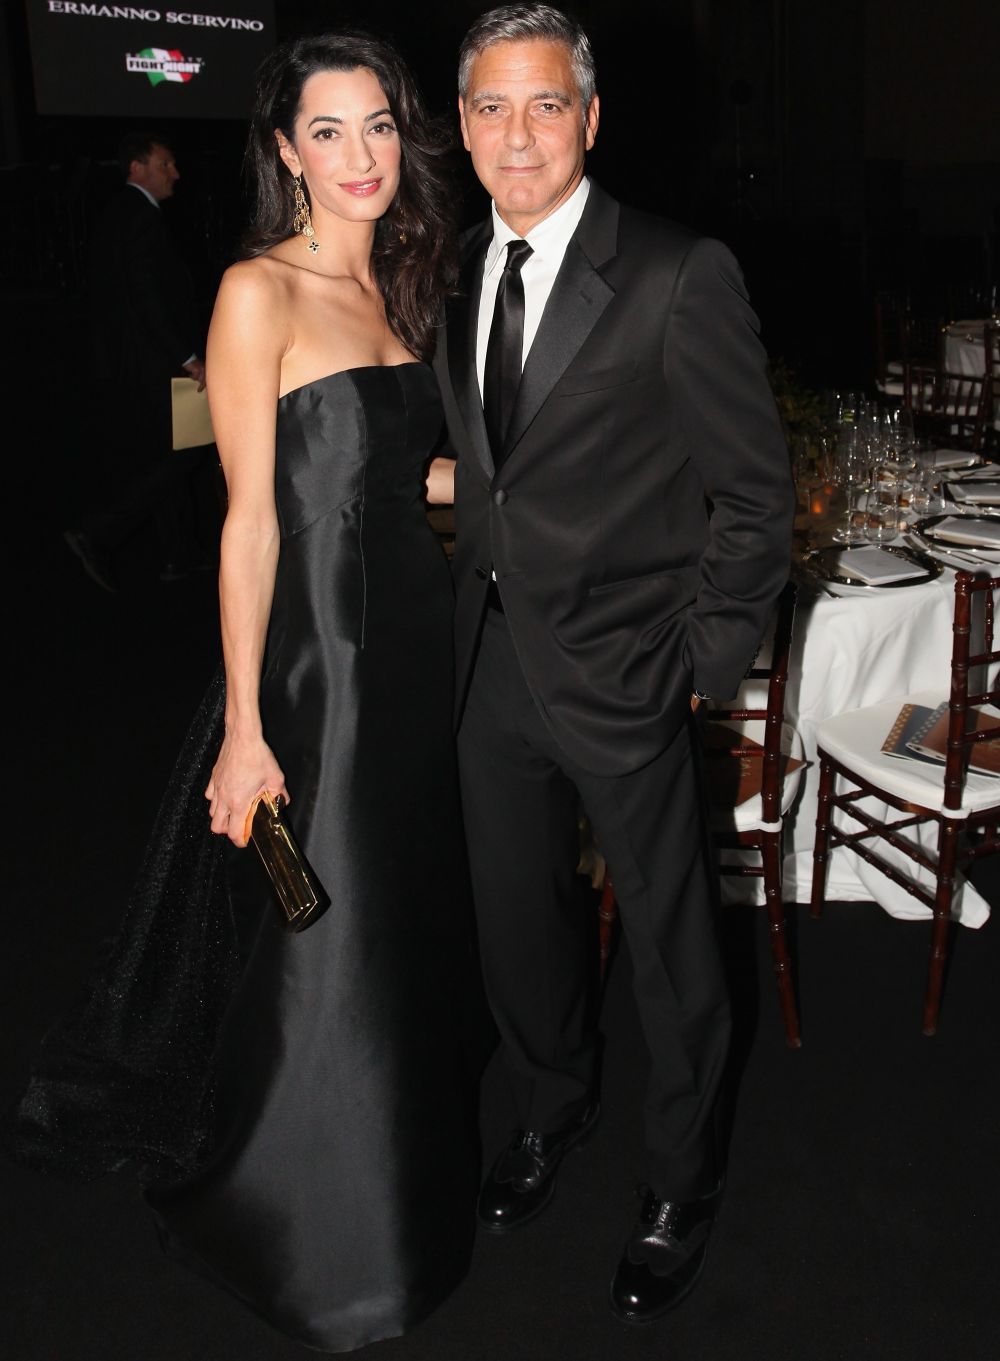 Amal Clooney, tinuta casual chic pe aeroport. Cat de bine arata sotia lui George Clooney chiar si atunci cand nu apare pe covorul rosu